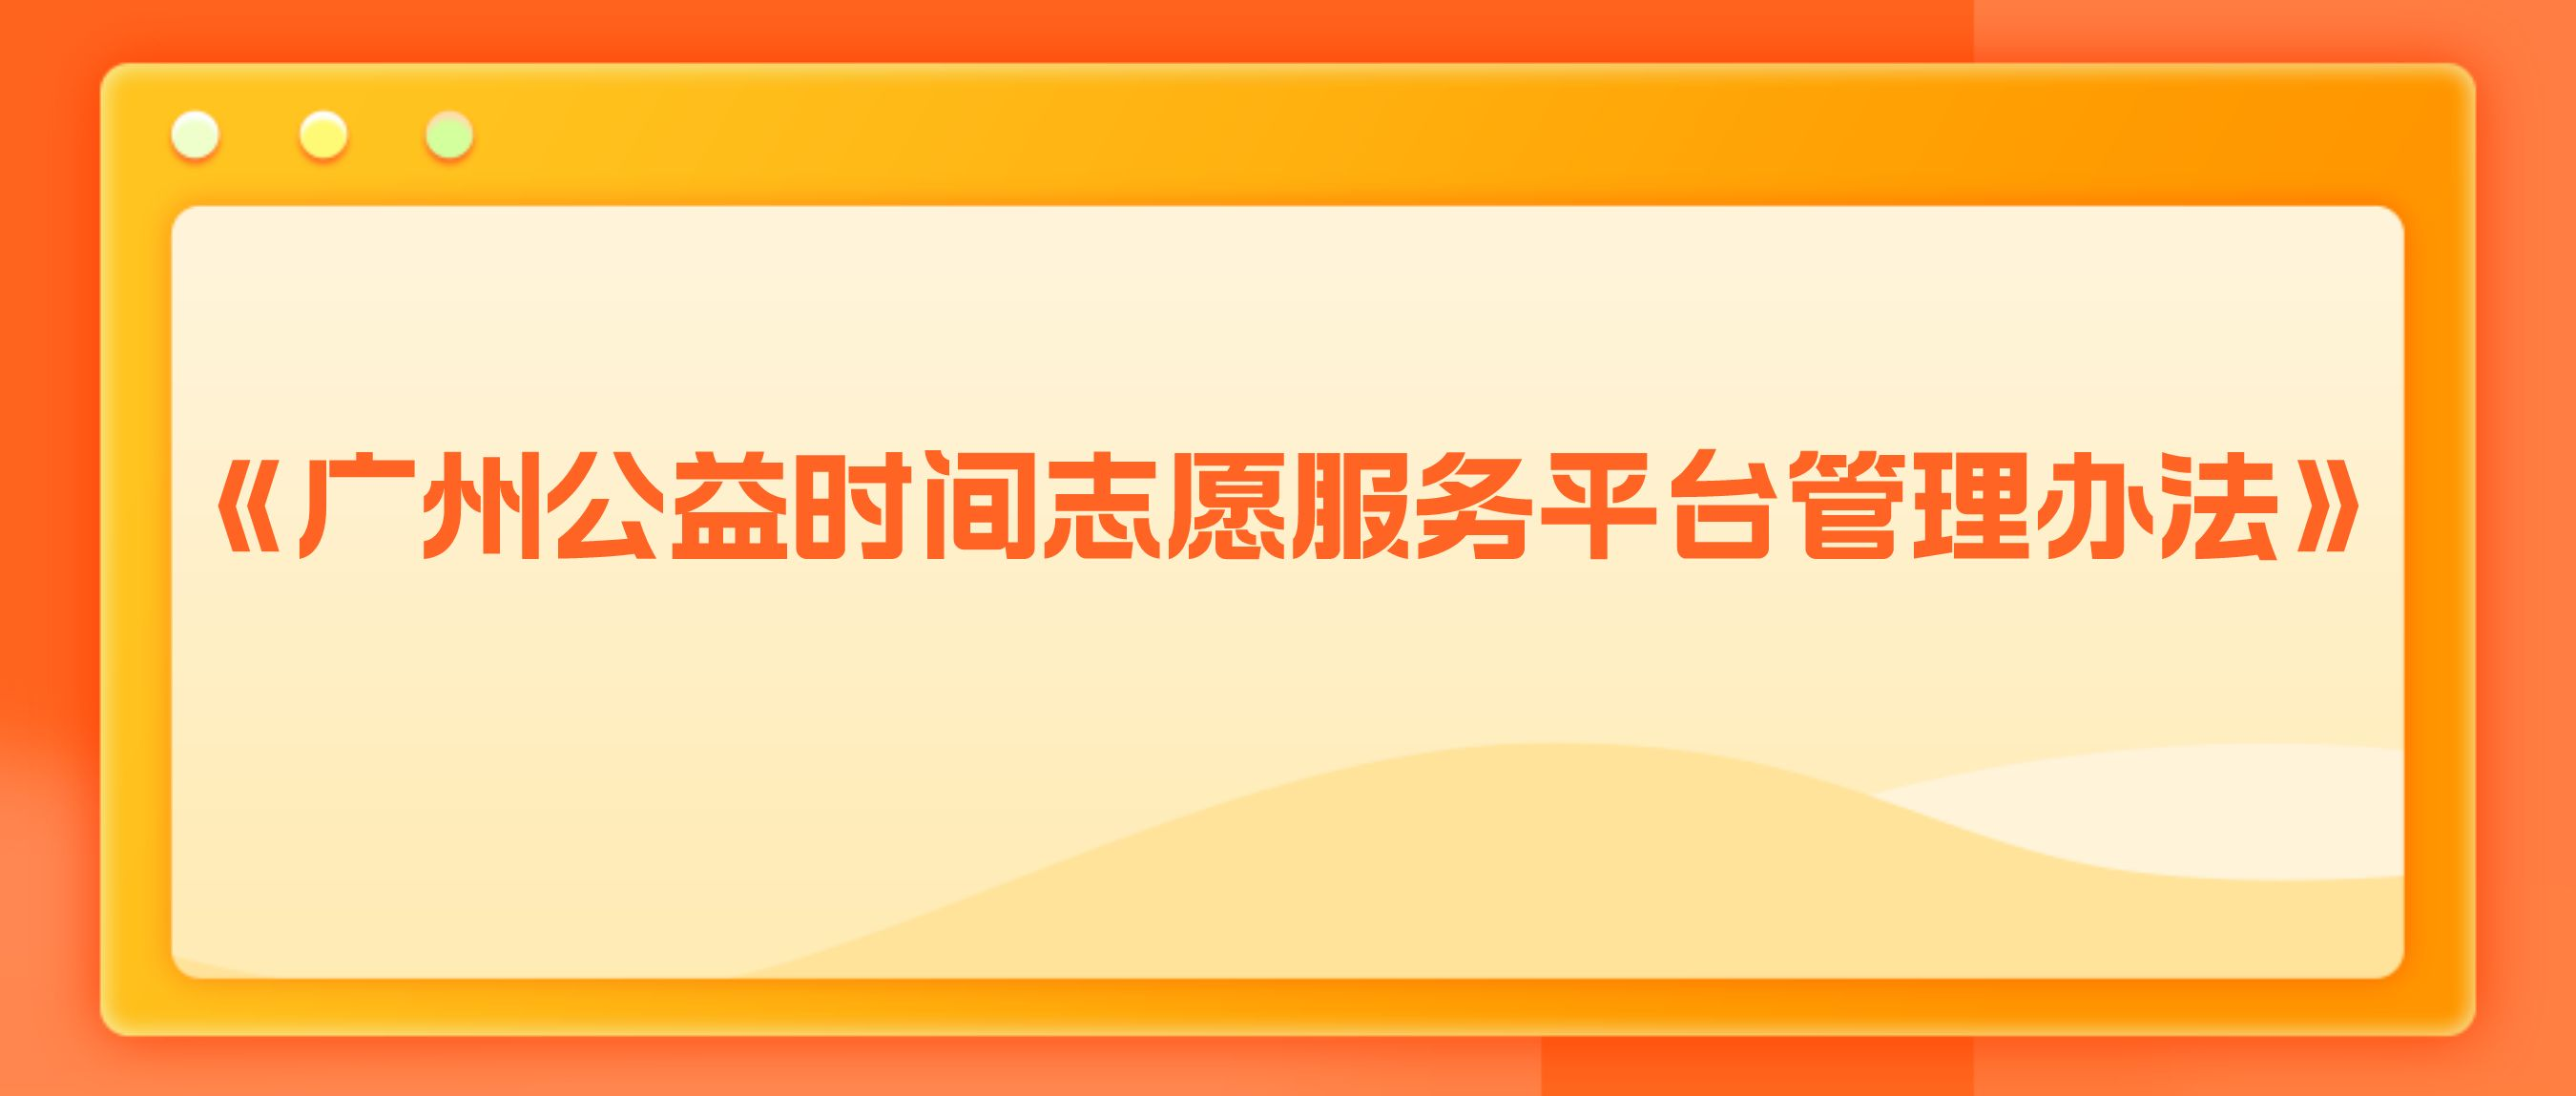 《广州公益时间志愿服务平台管理办法》正式公布